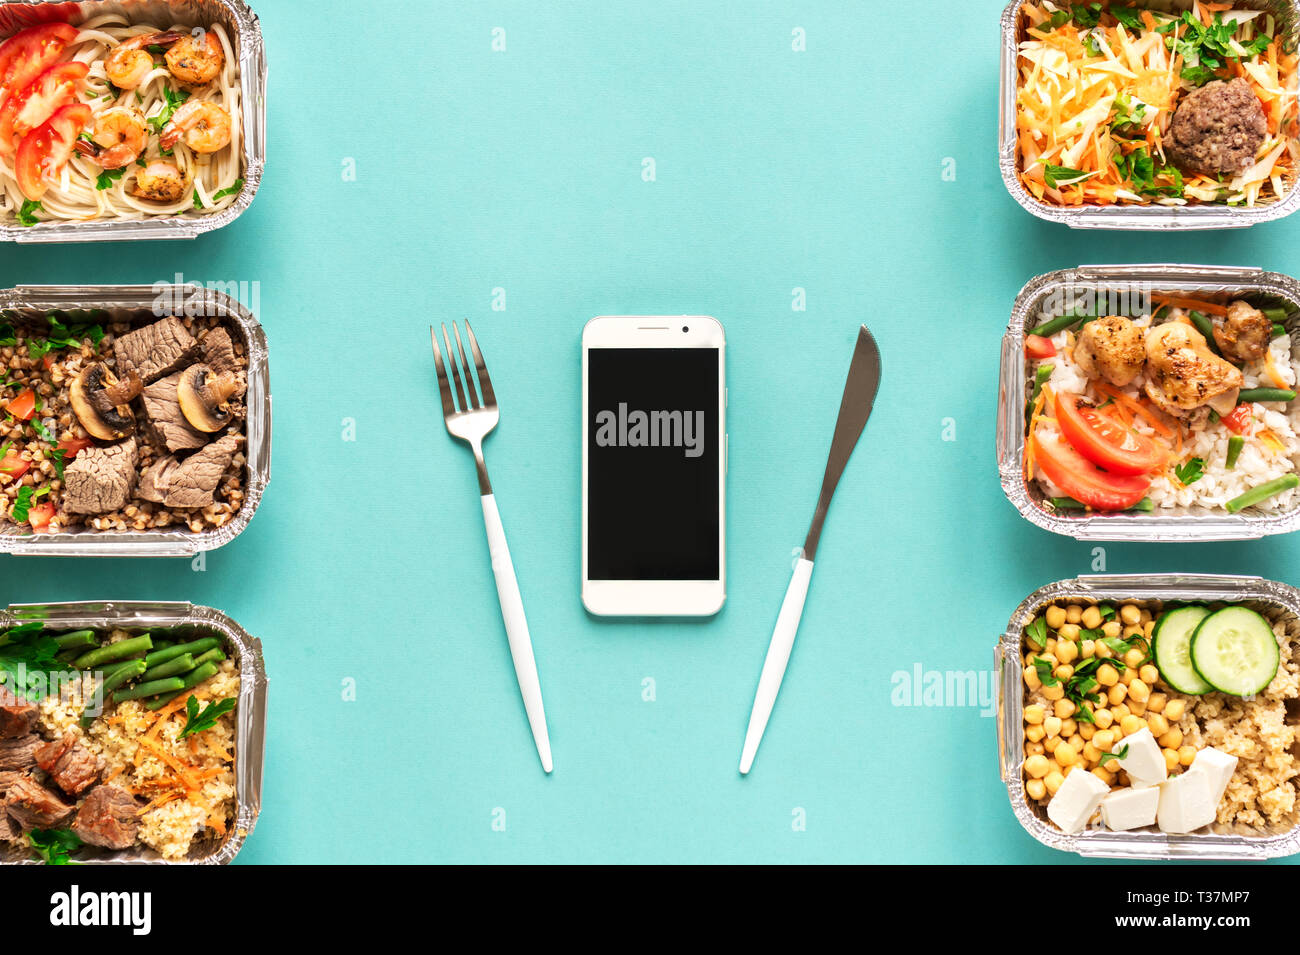 Täglichen Mahlzeiten in Folie Boxen und Smartphone auf blauem Hintergrund, Ansicht von oben, kopieren. Gesundes Essen Lieferung Konzept. Fitness Ernährung Ernährung. Stockfoto